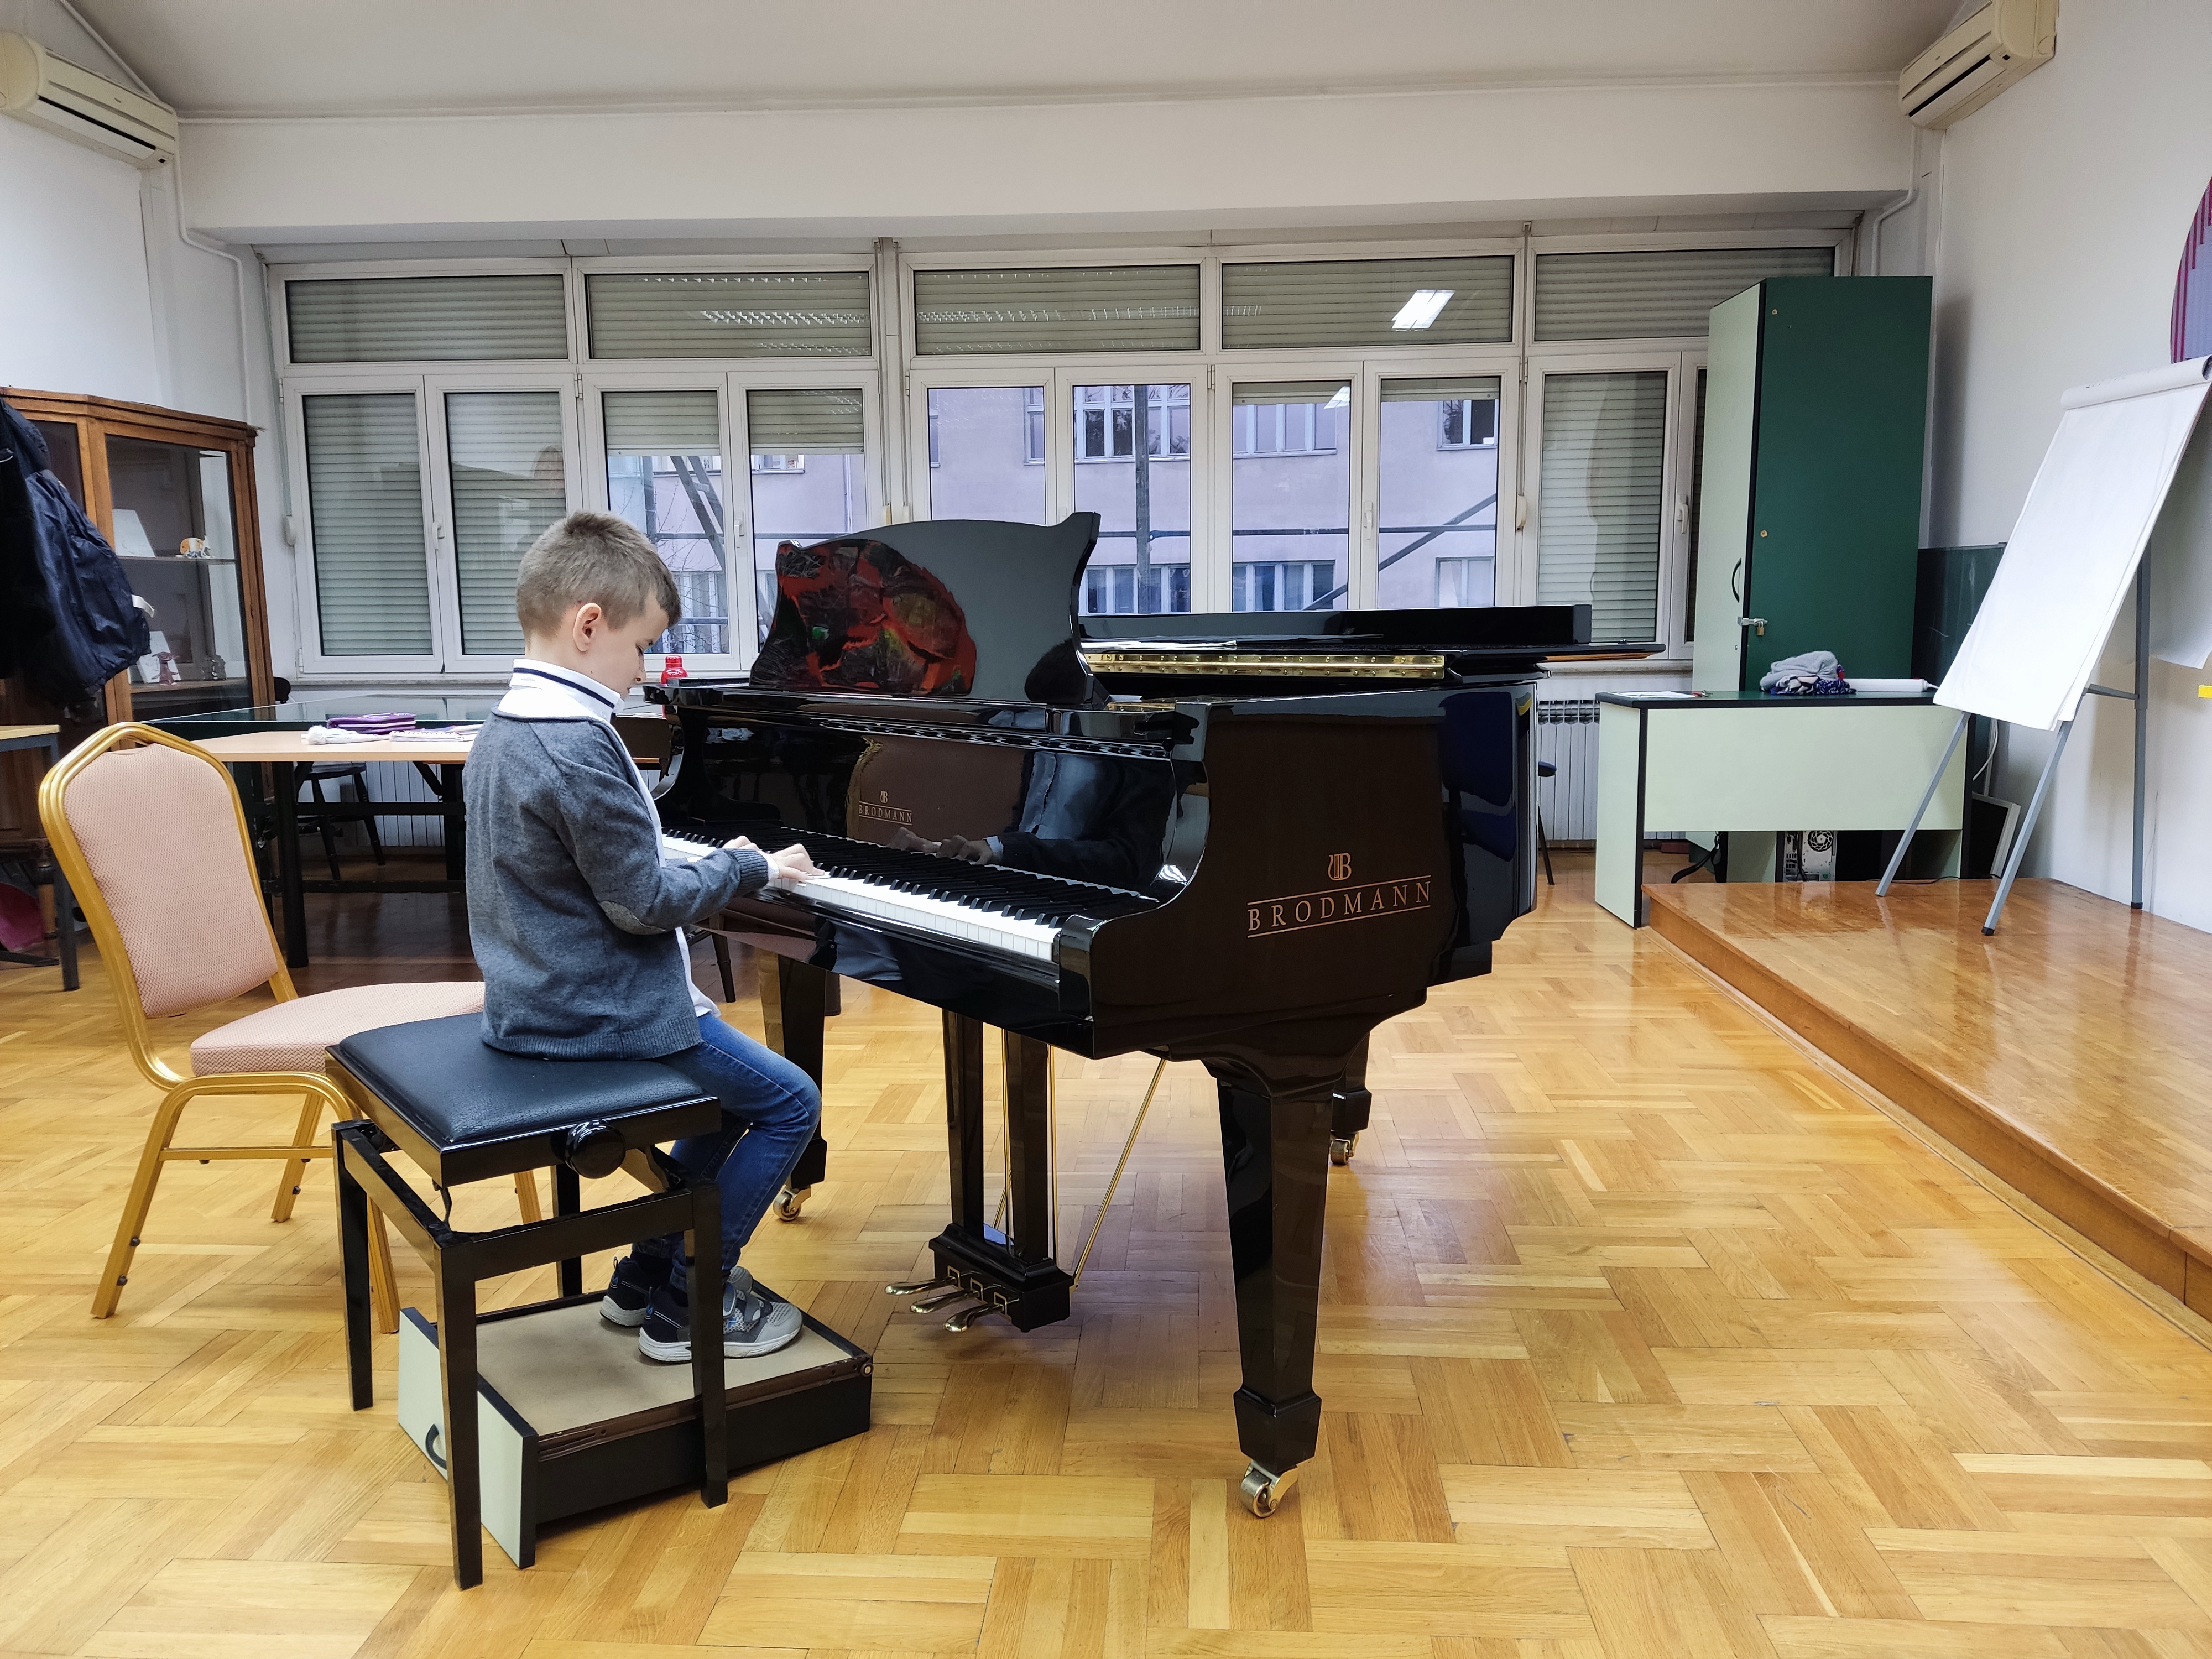 Učenik svira klavir